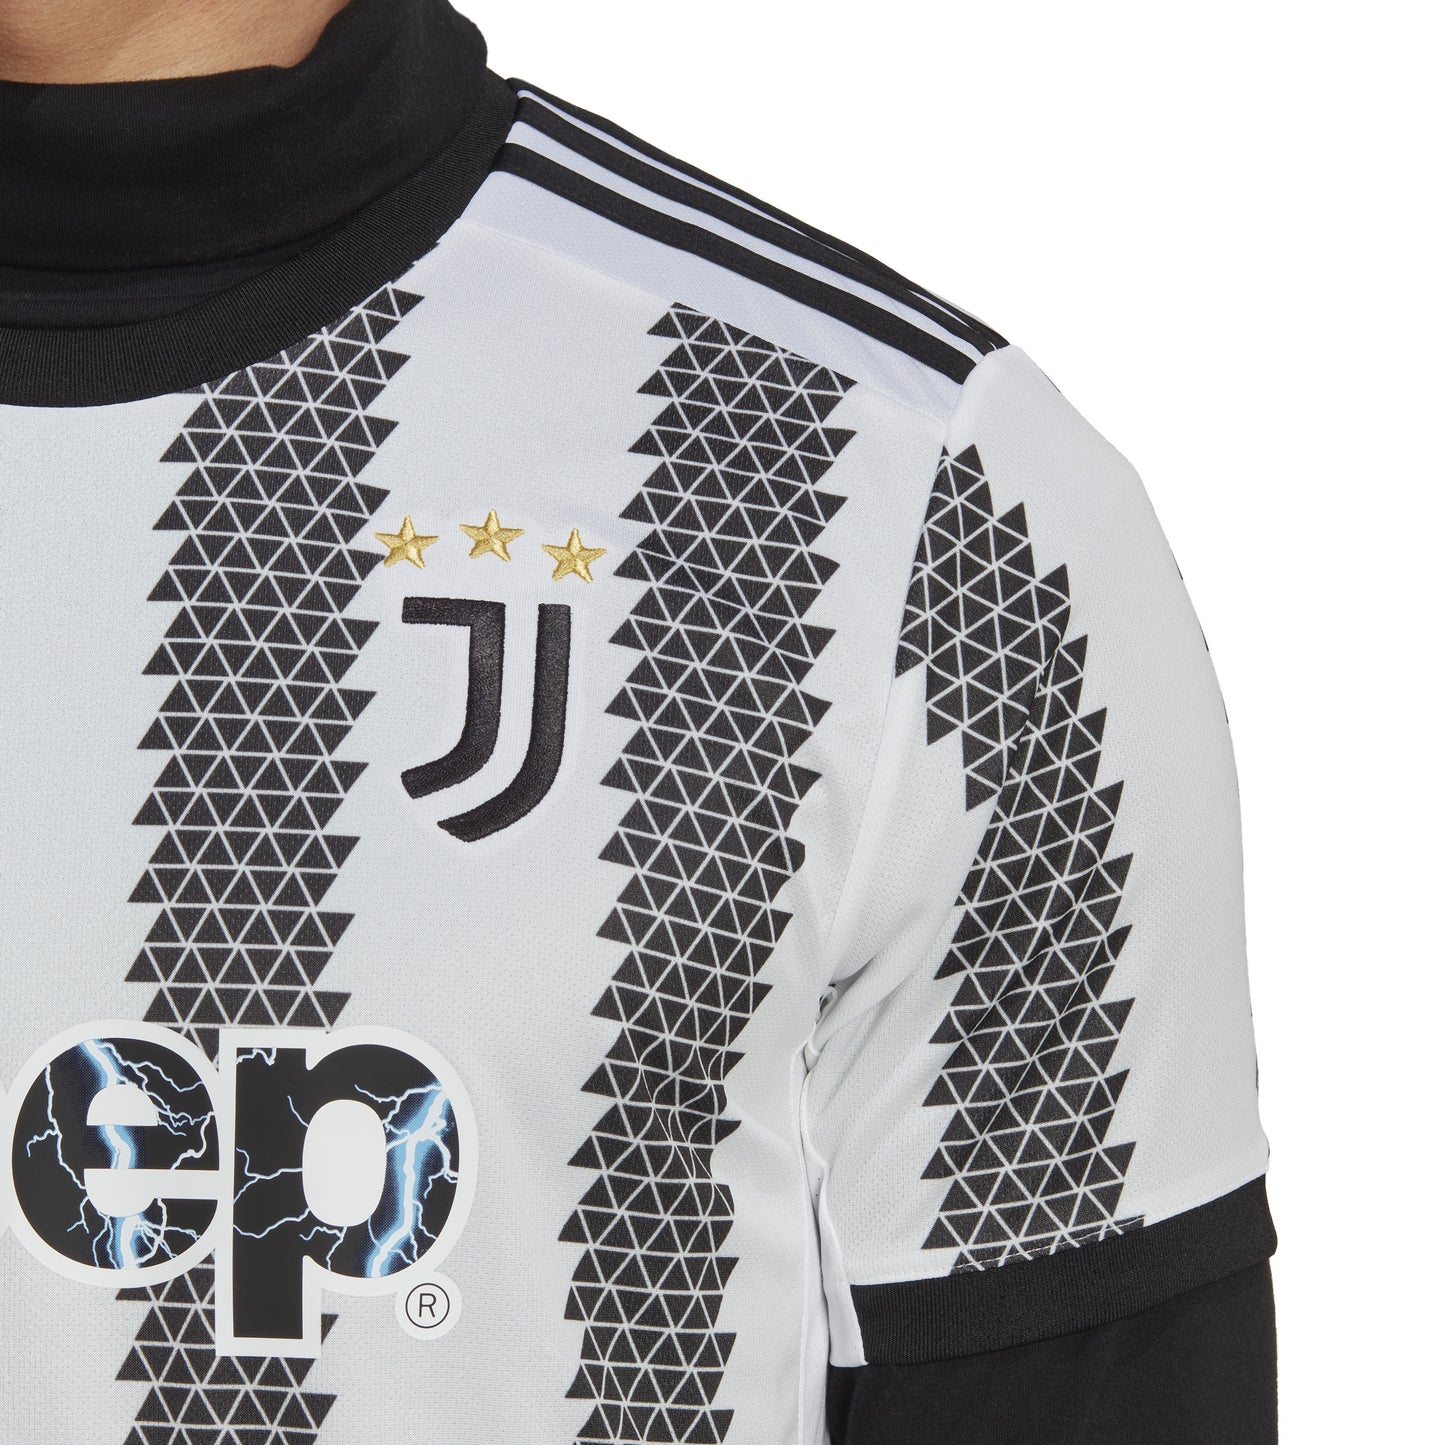 Adidas Juventus 2022/23 Home Jersey